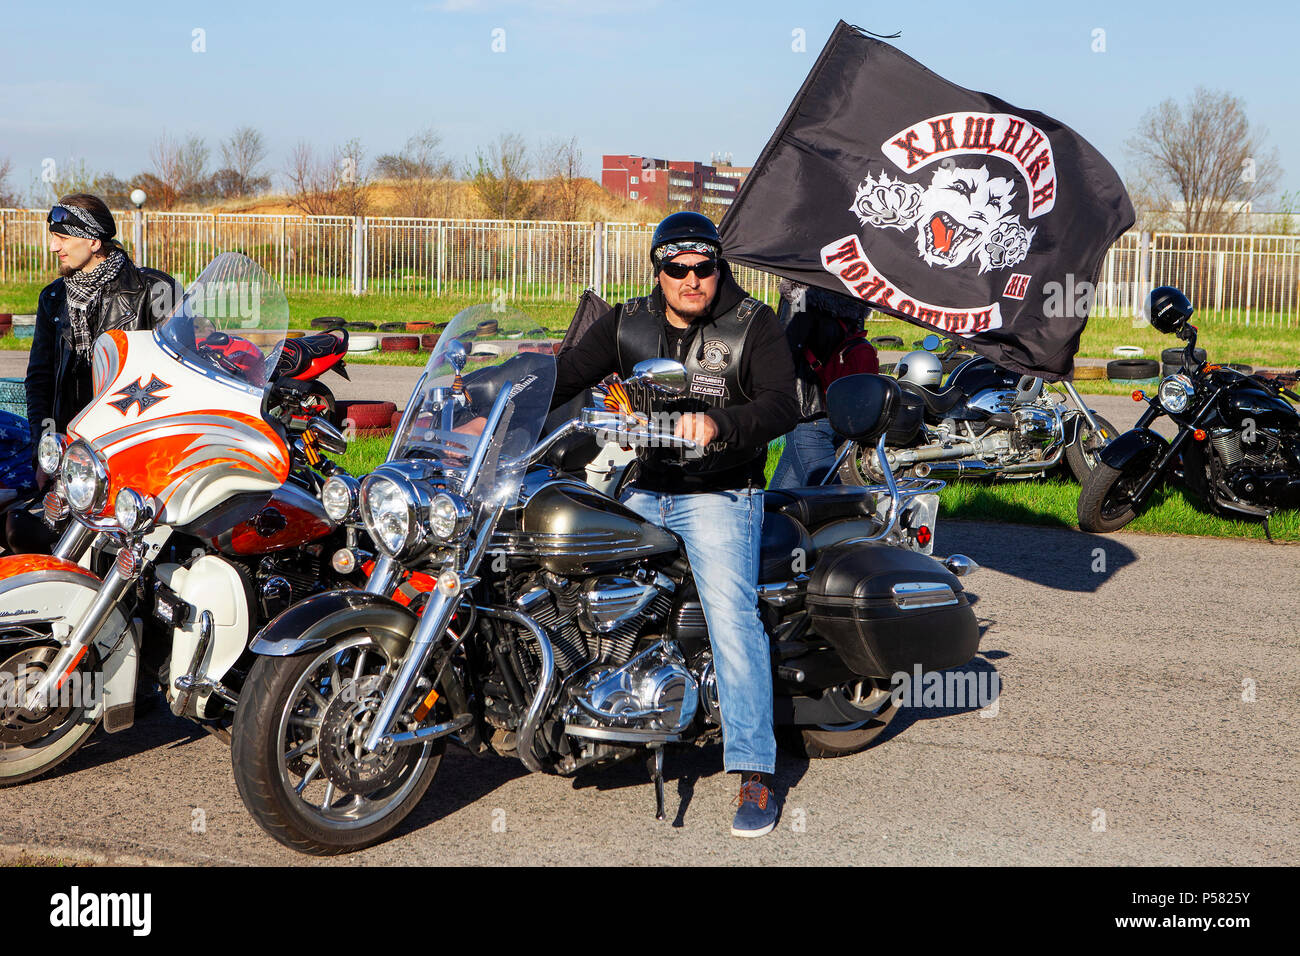 Motorradfahrer mit der Flagge von der Club 'Khishniki'. Russland, Togliatti, der Military Museum. Der Tag des Sieges - Mai 9, 2018. Stockfoto